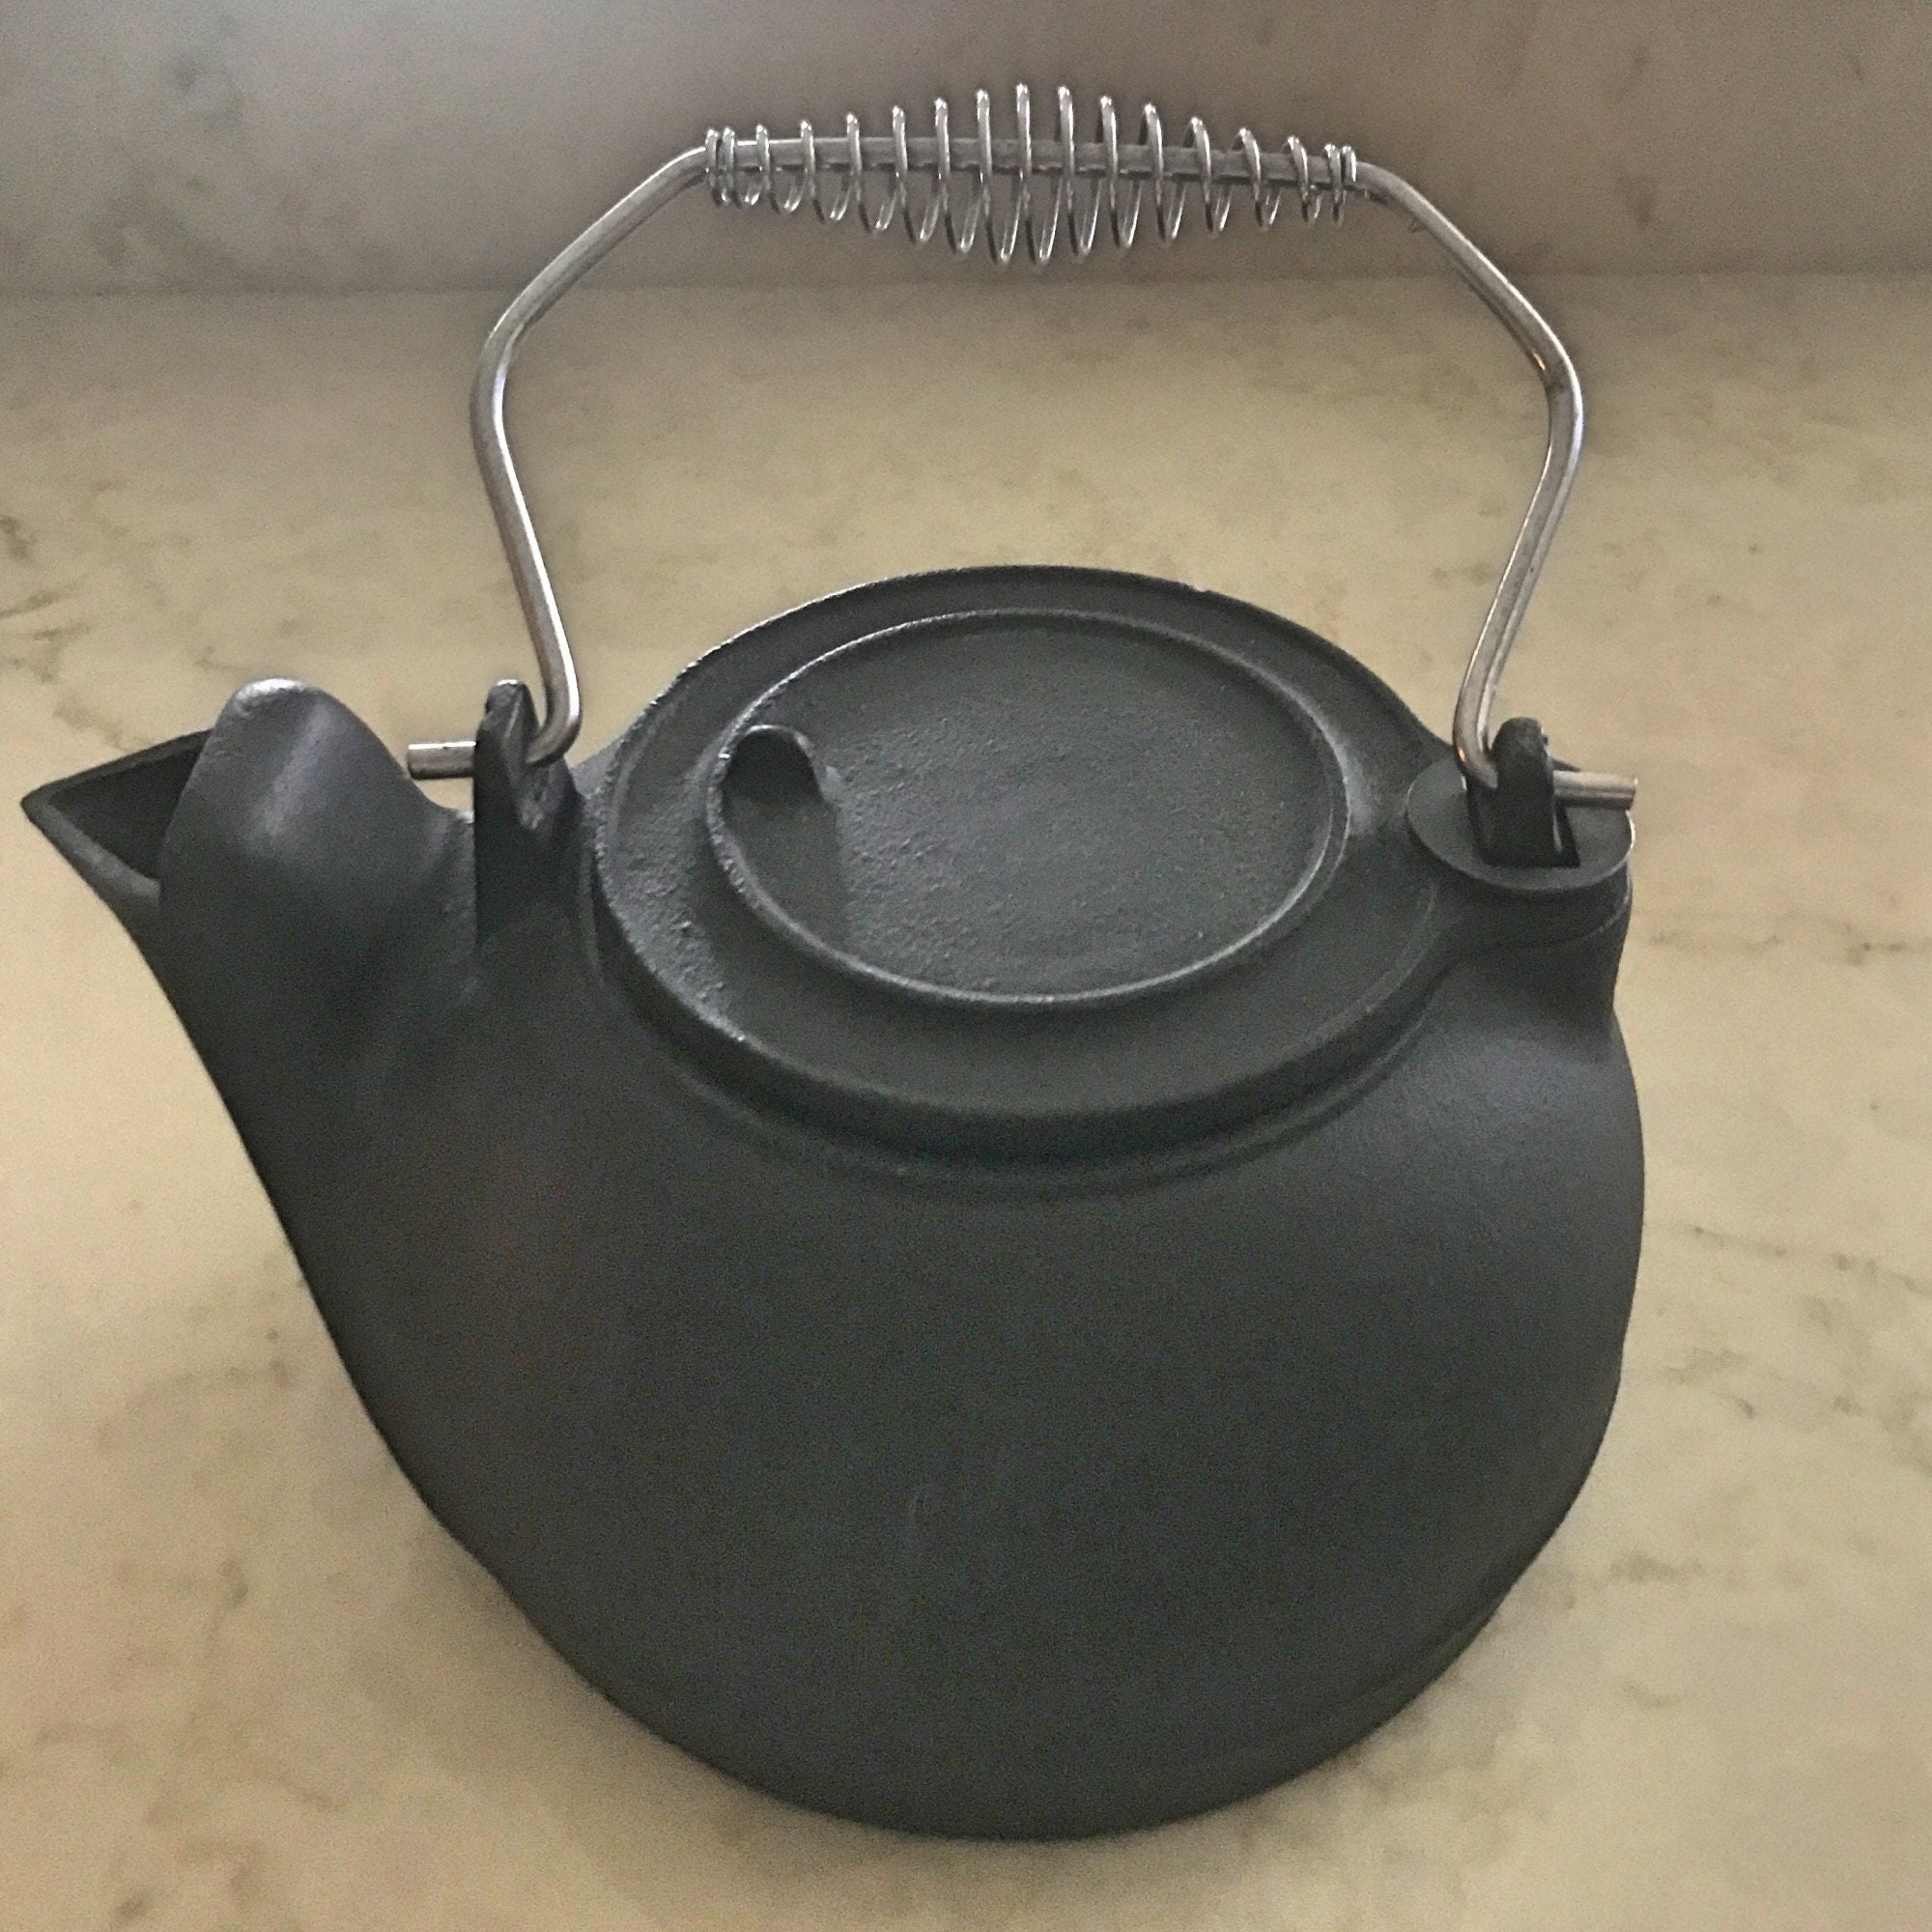 Antique Vintage Cast Iron Teapot Coffee Pot Kettle Swivel Lid